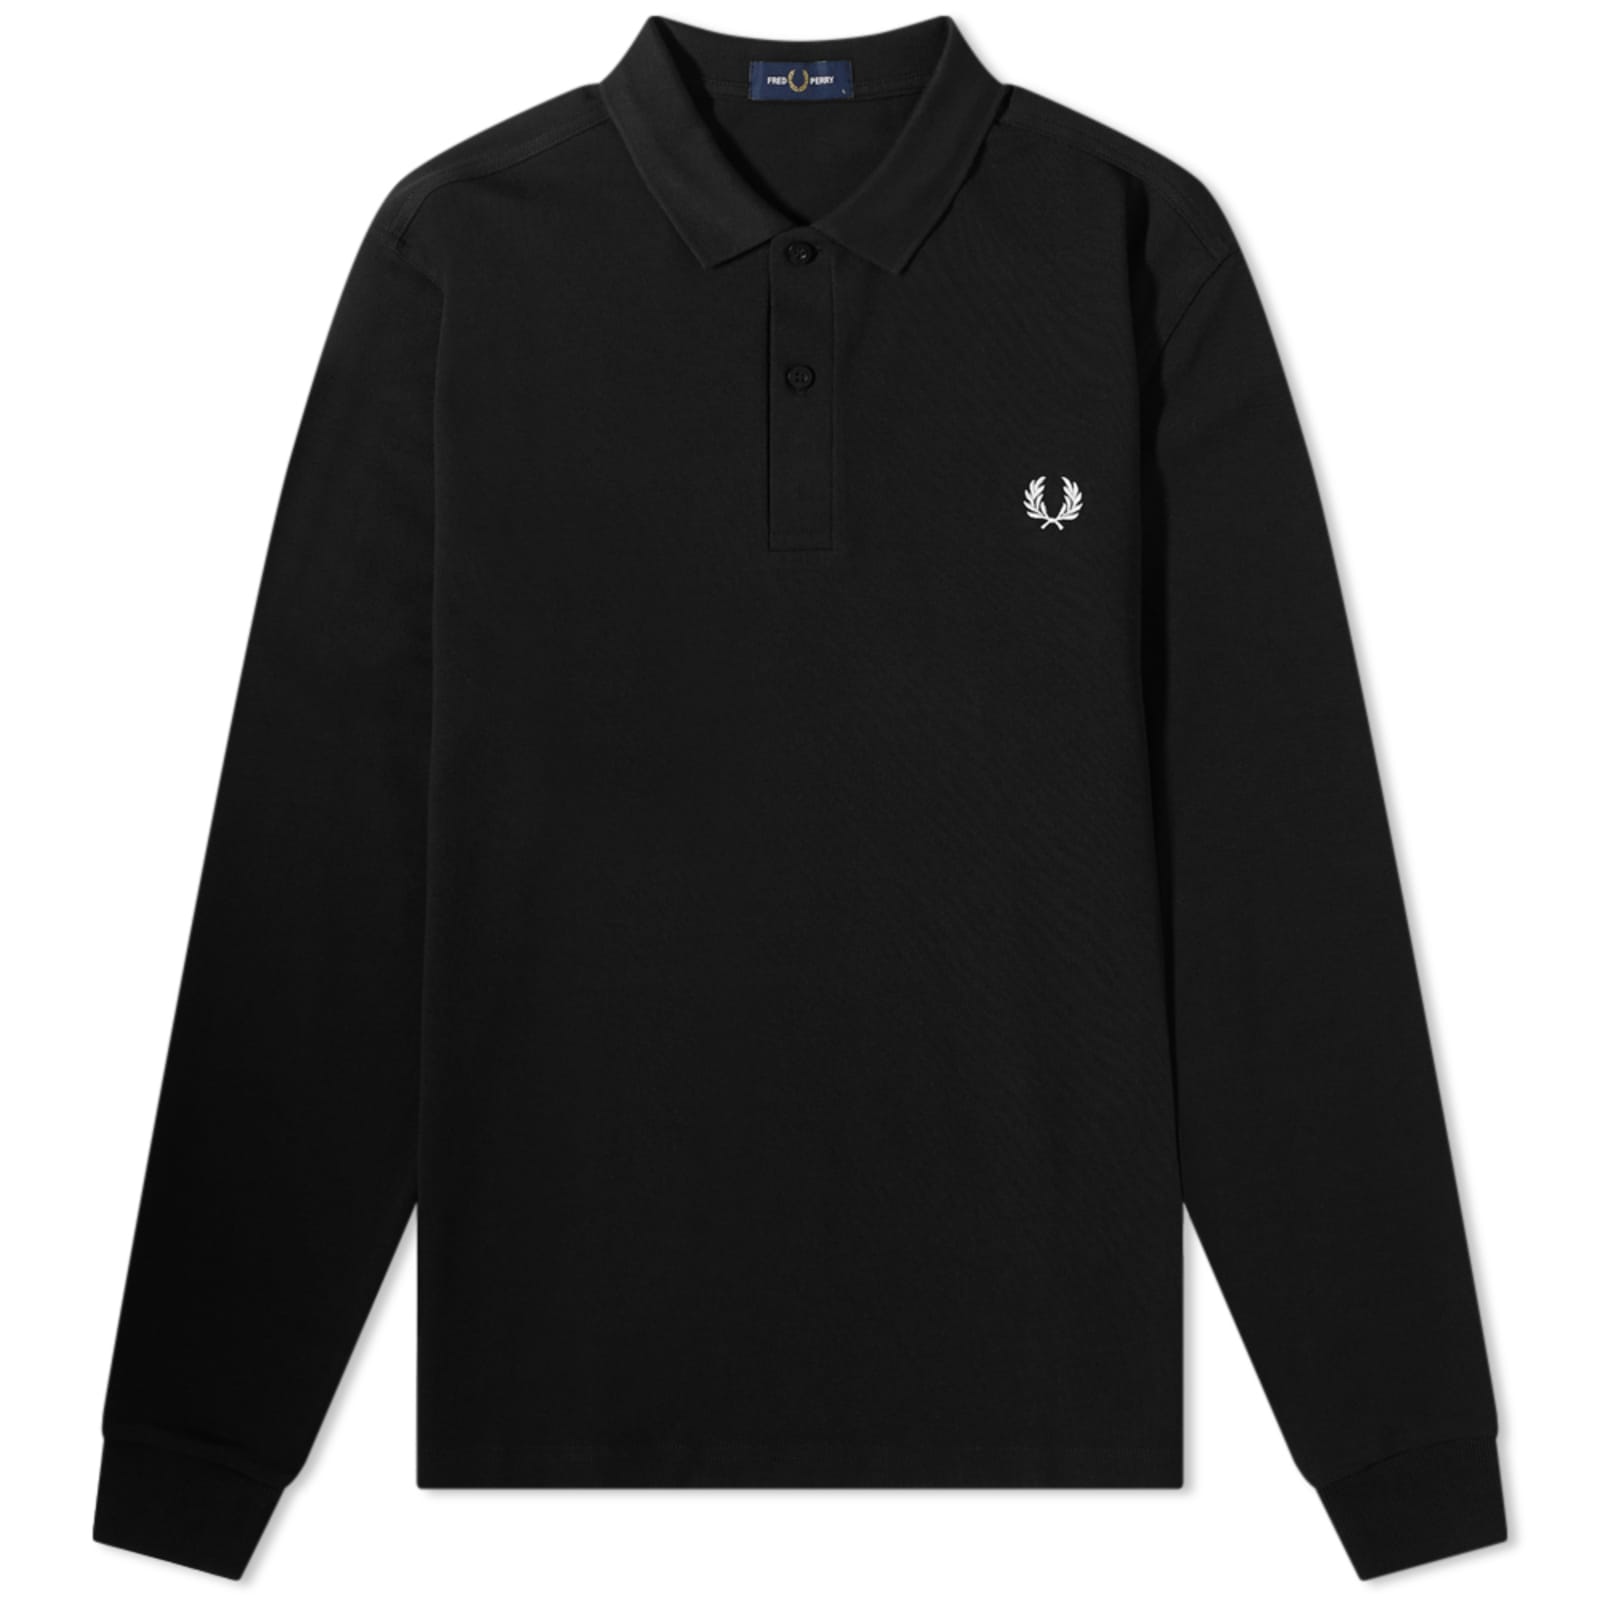 Поло Fred Perry Long Sleeve Plain, цвет Black & Chrome футболка поло fred perry authentic long sleeve plain черный